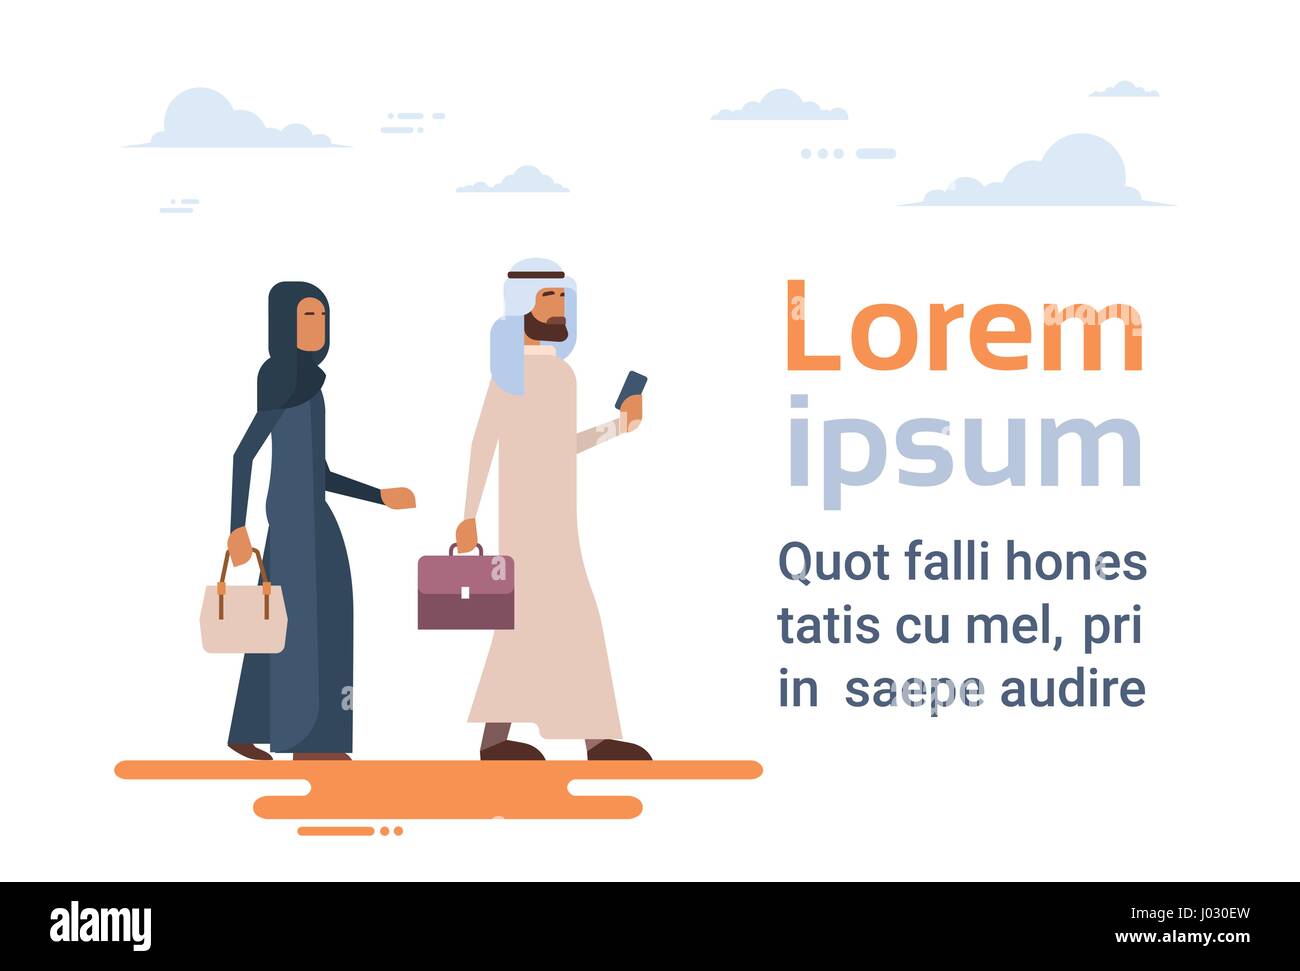 Deux Arabes Musulmans Business Man and Woman vêtements traditionnels caractères arabes Illustration de Vecteur